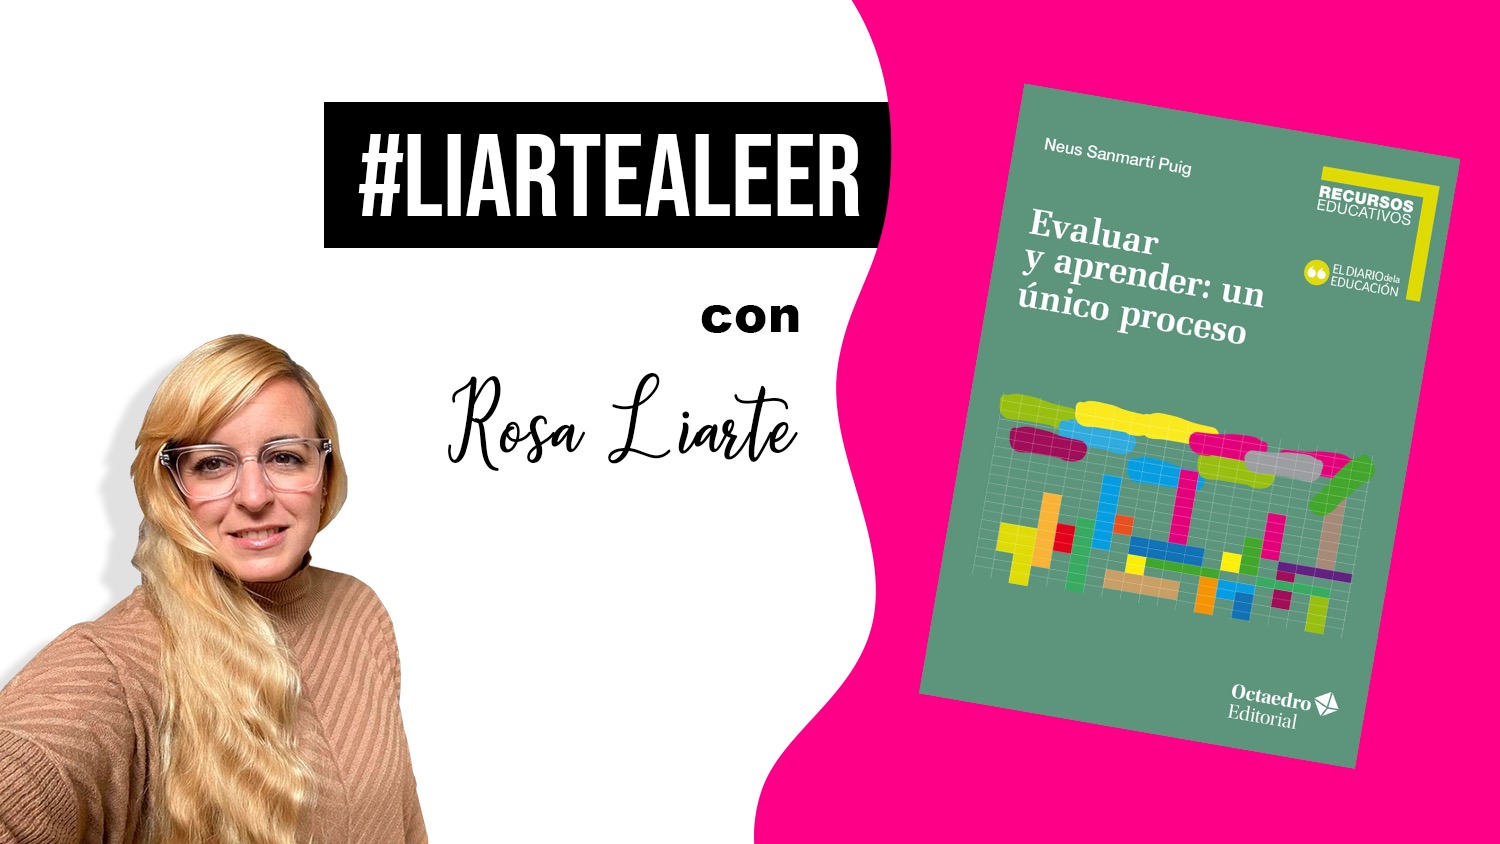 #LiarteaLeer: Evaluar y aprender, un único proceso